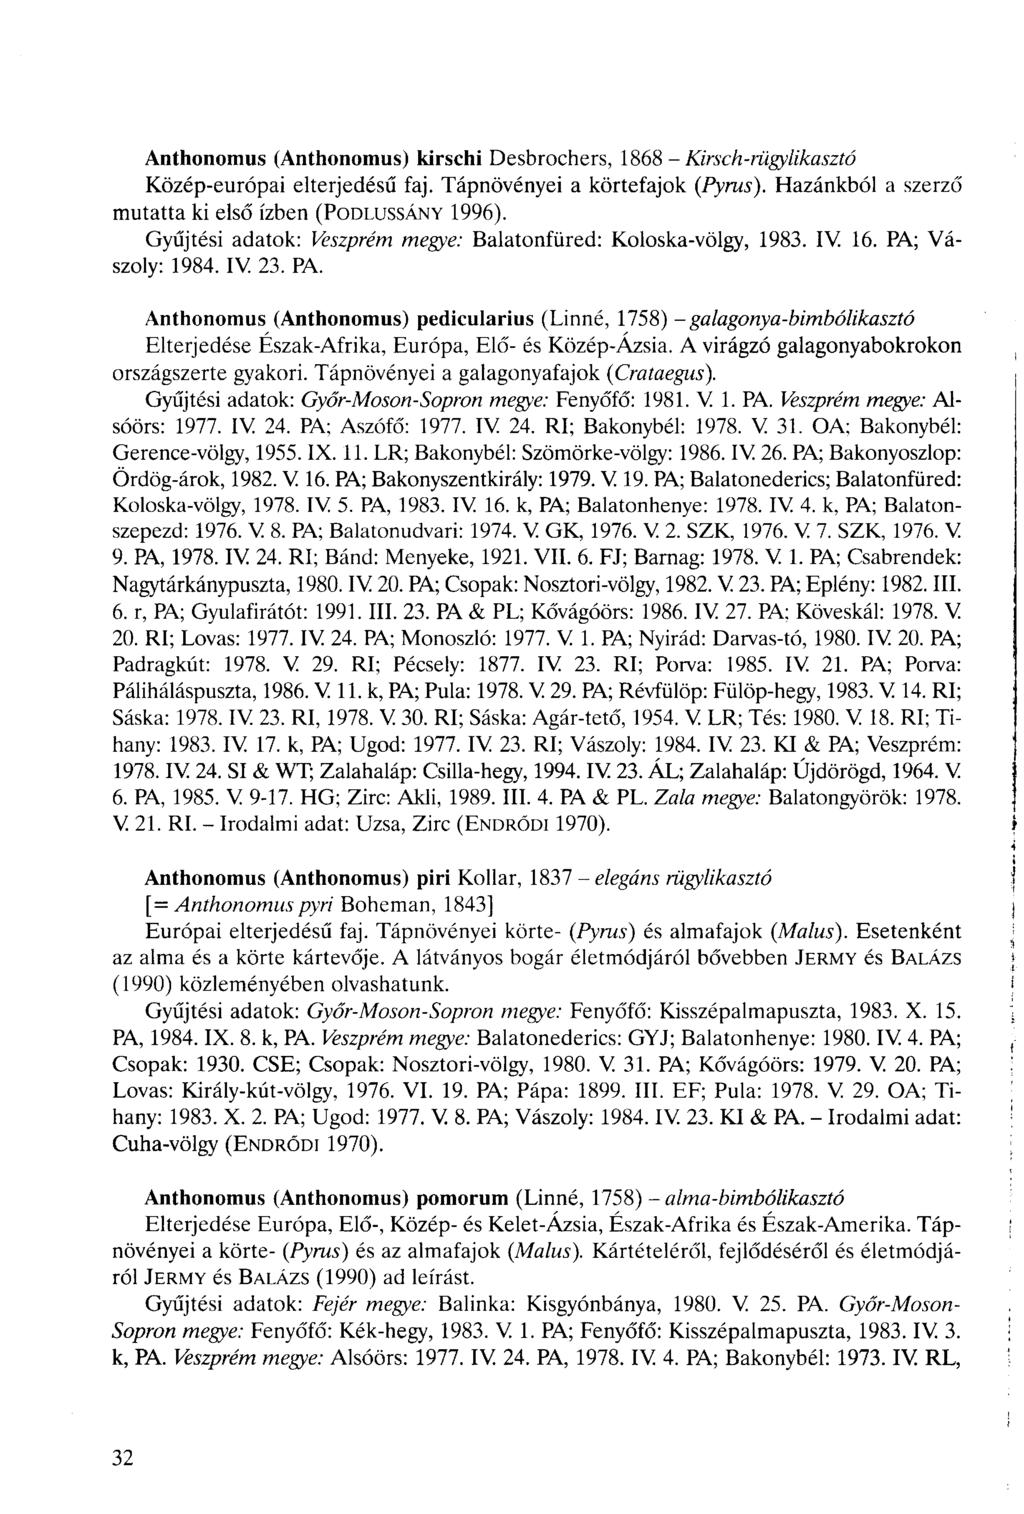 Anthonomus (Anthonomus) kirschi Desbrochers, 1868 - Kirsch-rügylikasztó Közép-európai elterjedésű faj. Tápnövényei a körtefajok (Pyrus). Hazánkból a szerző mutatta ki első ízben (PODLUSSÁNY 1996).